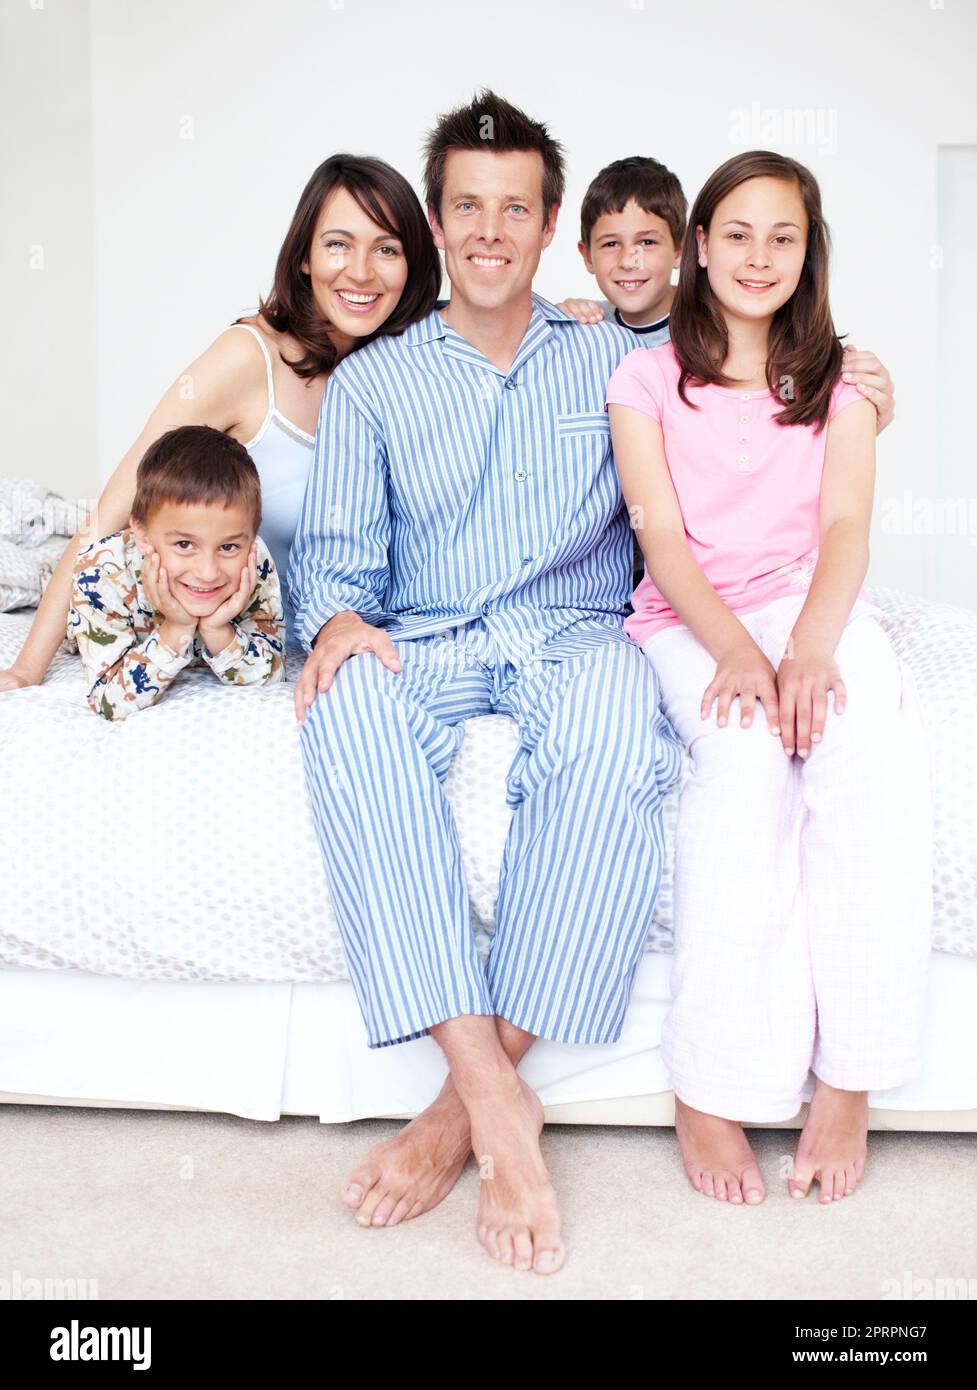 Er hätte nicht stolzer auf seine Familie sein können. Eine liebevolle fünfköpfige Familie, die in ihrem Schlafanzug auf einem Bett sitzt. Stockfoto